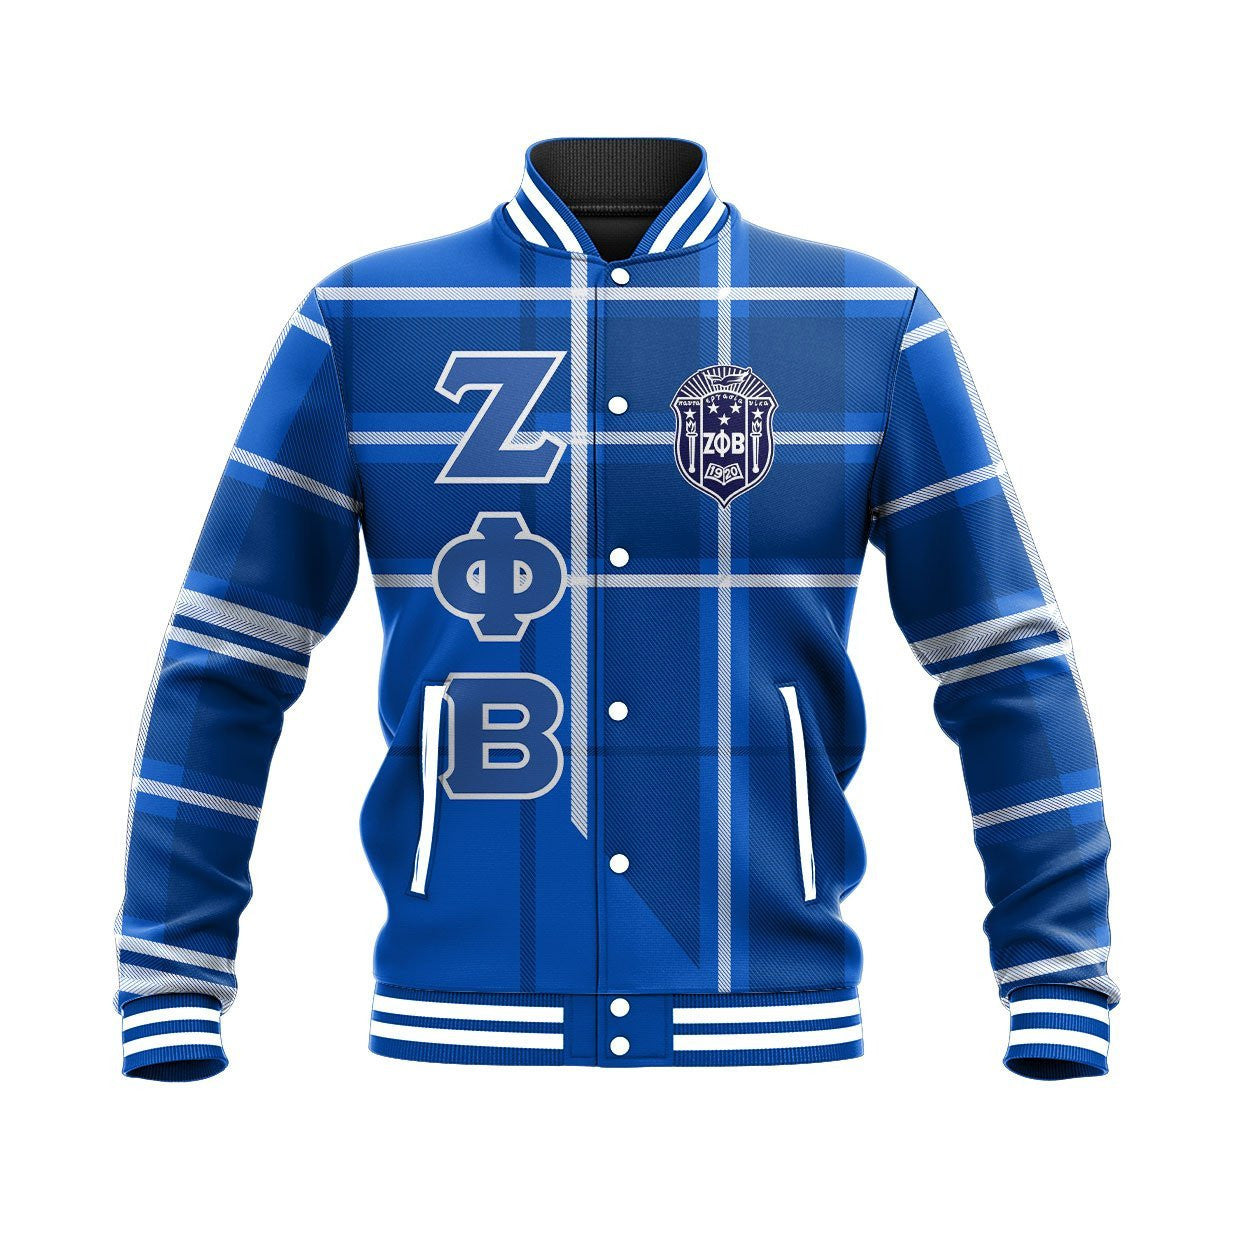 Sorority Jacket - Zeta Phi Beta Burberr Style Baseball Jacket